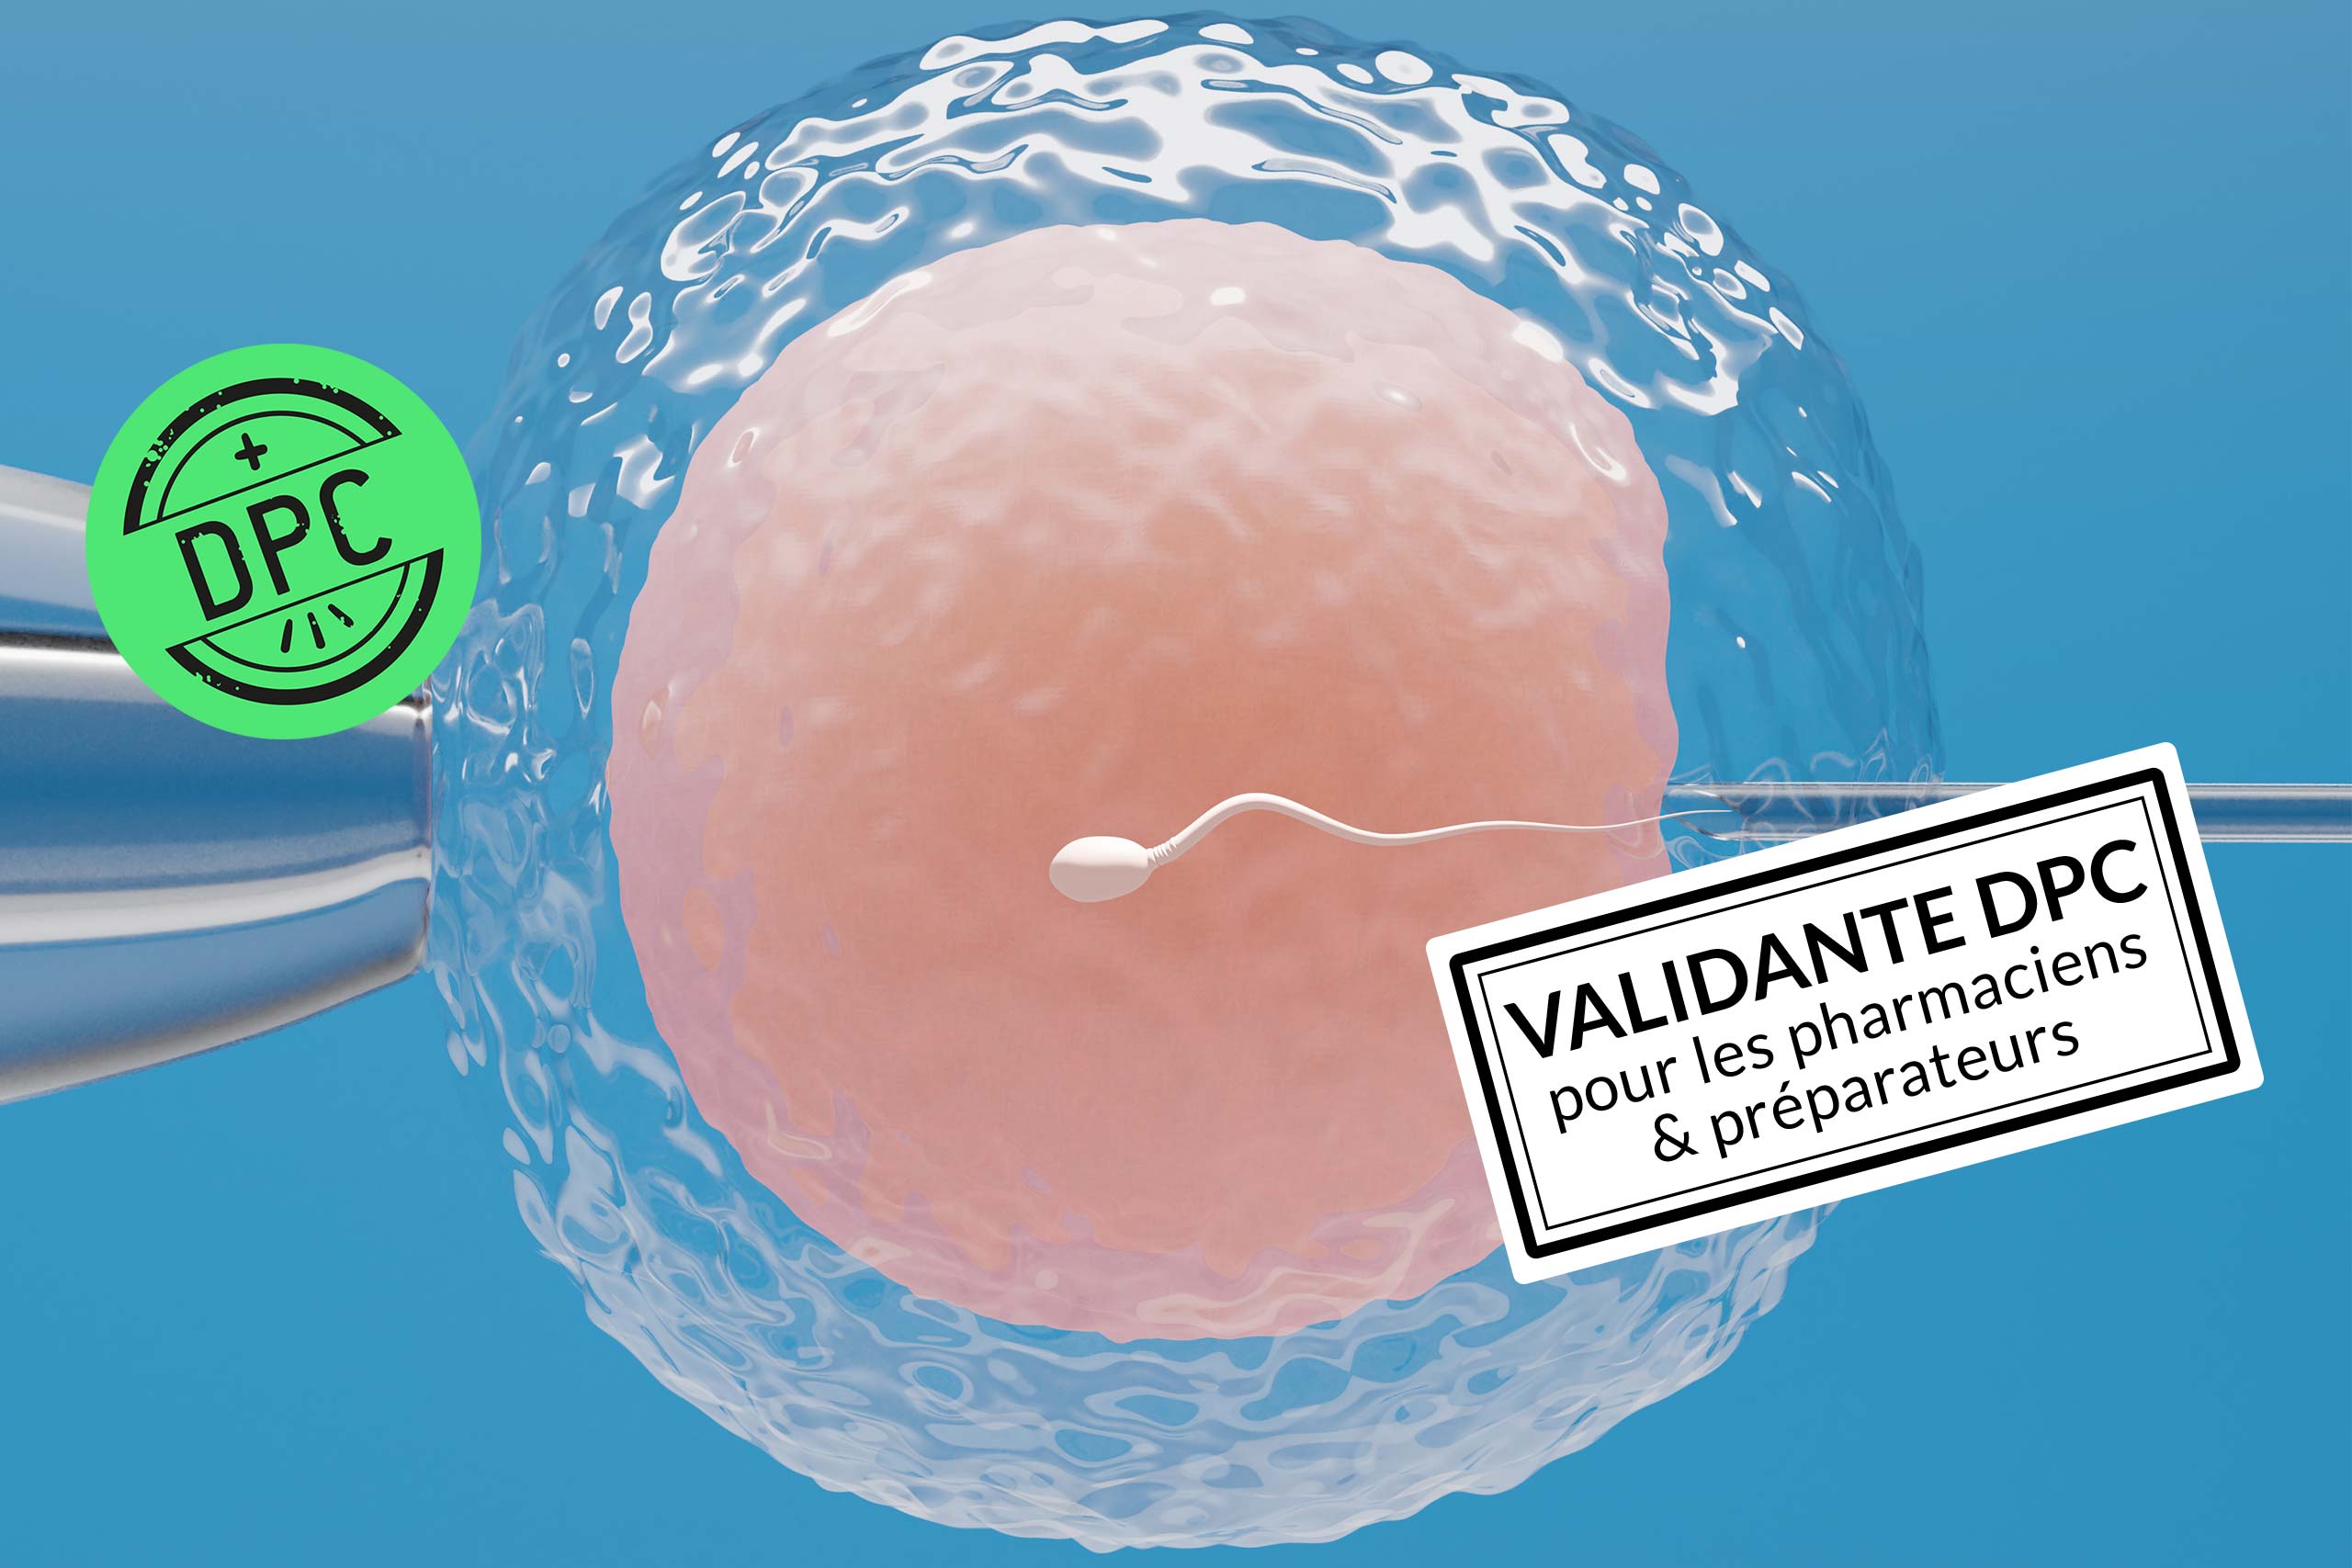 Formation infertilité DPC validante pour les pharmaciens et préparateurs